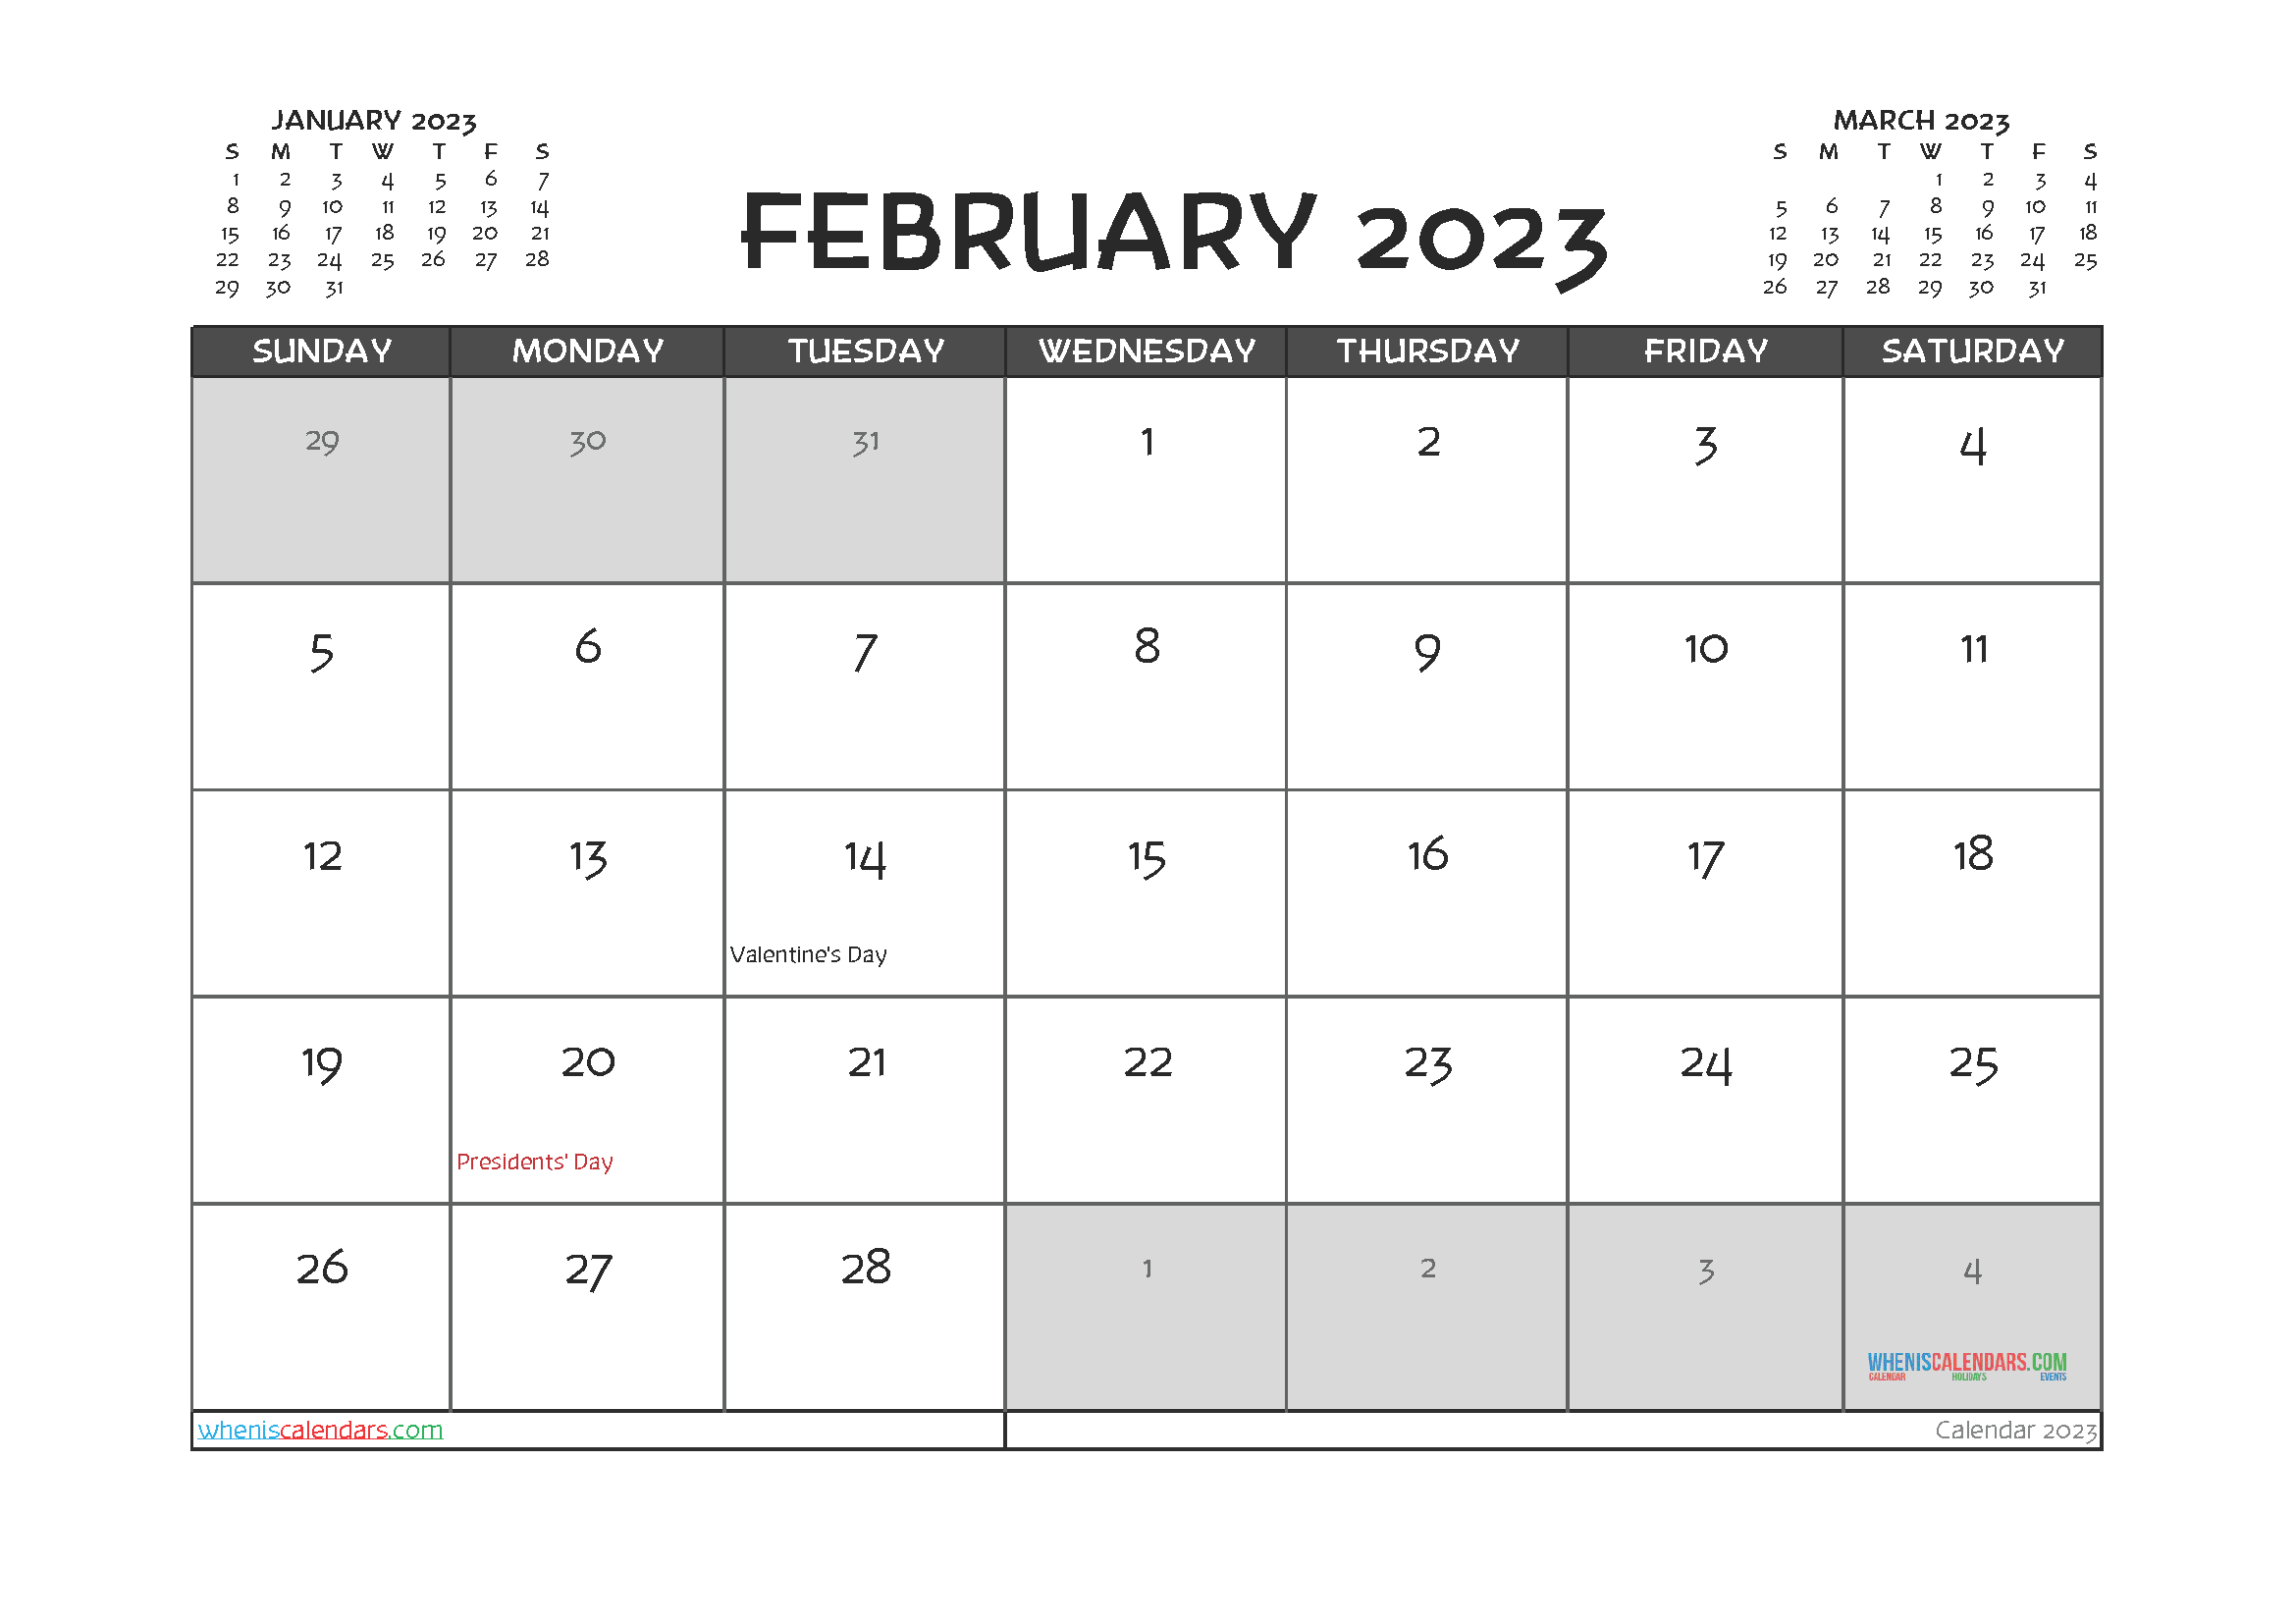 february-2023-calendar-free-printable-calendar-february-2023-calendar